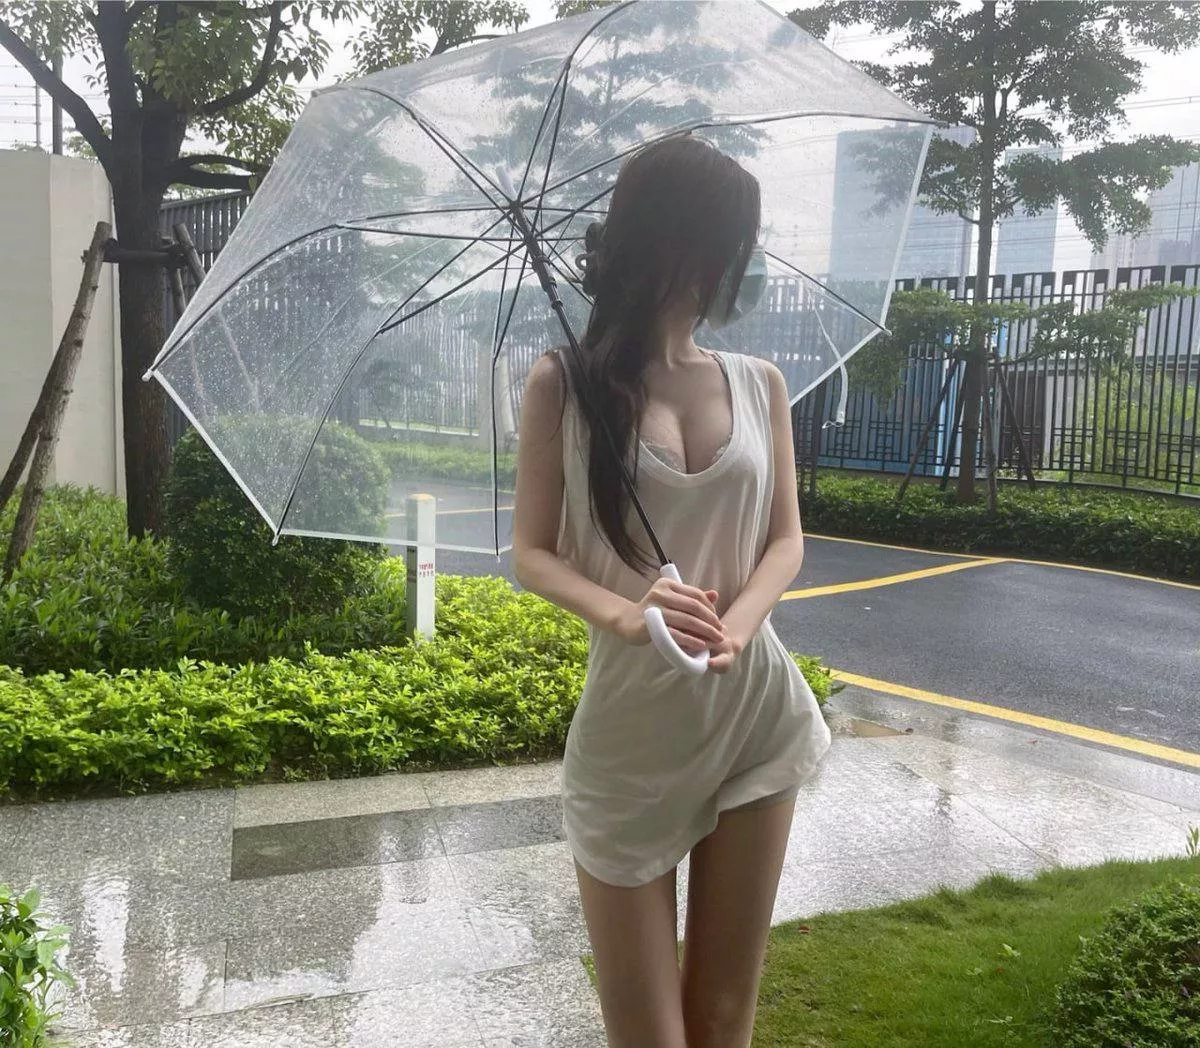 raining beautiful breasts Transparent Umbrella